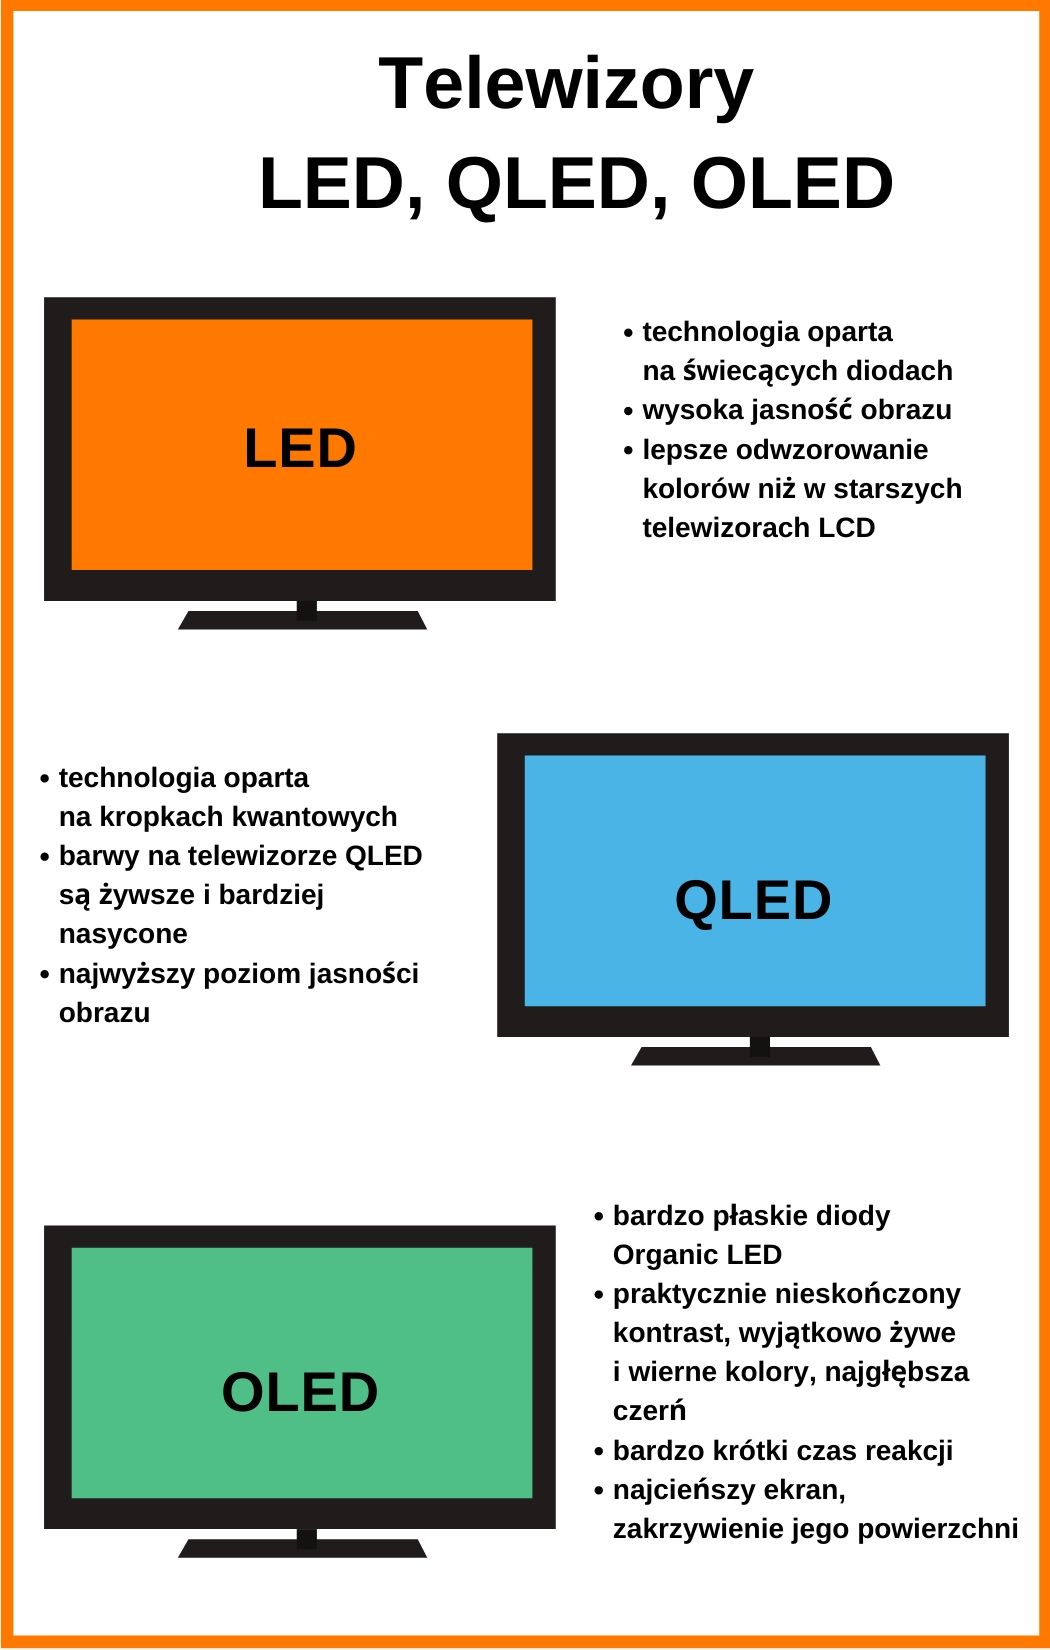 Telewizory LED, QLED, OLED – czym się różnią?